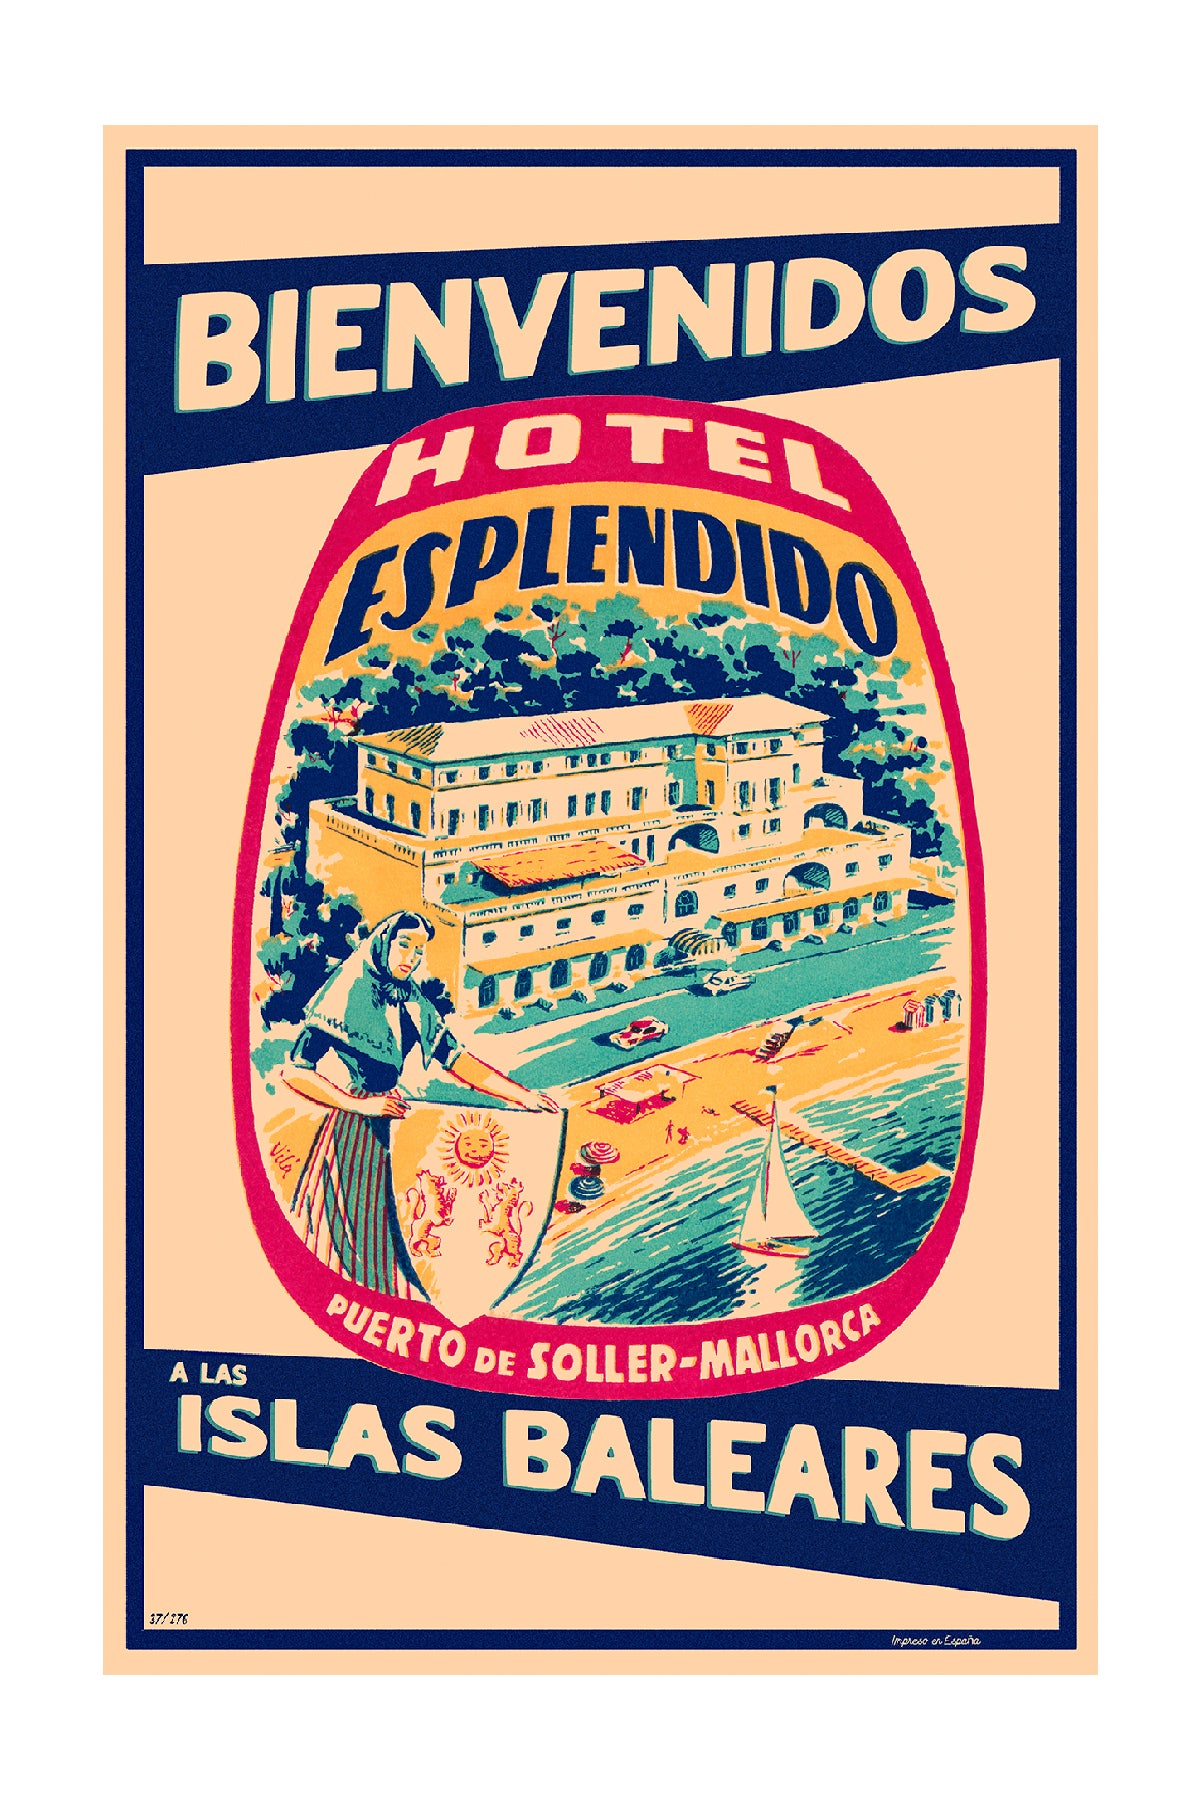 Bienvenidos a las Islas Baleares, Hotel Espléndido, Puerto de Sóller, Mallorca.